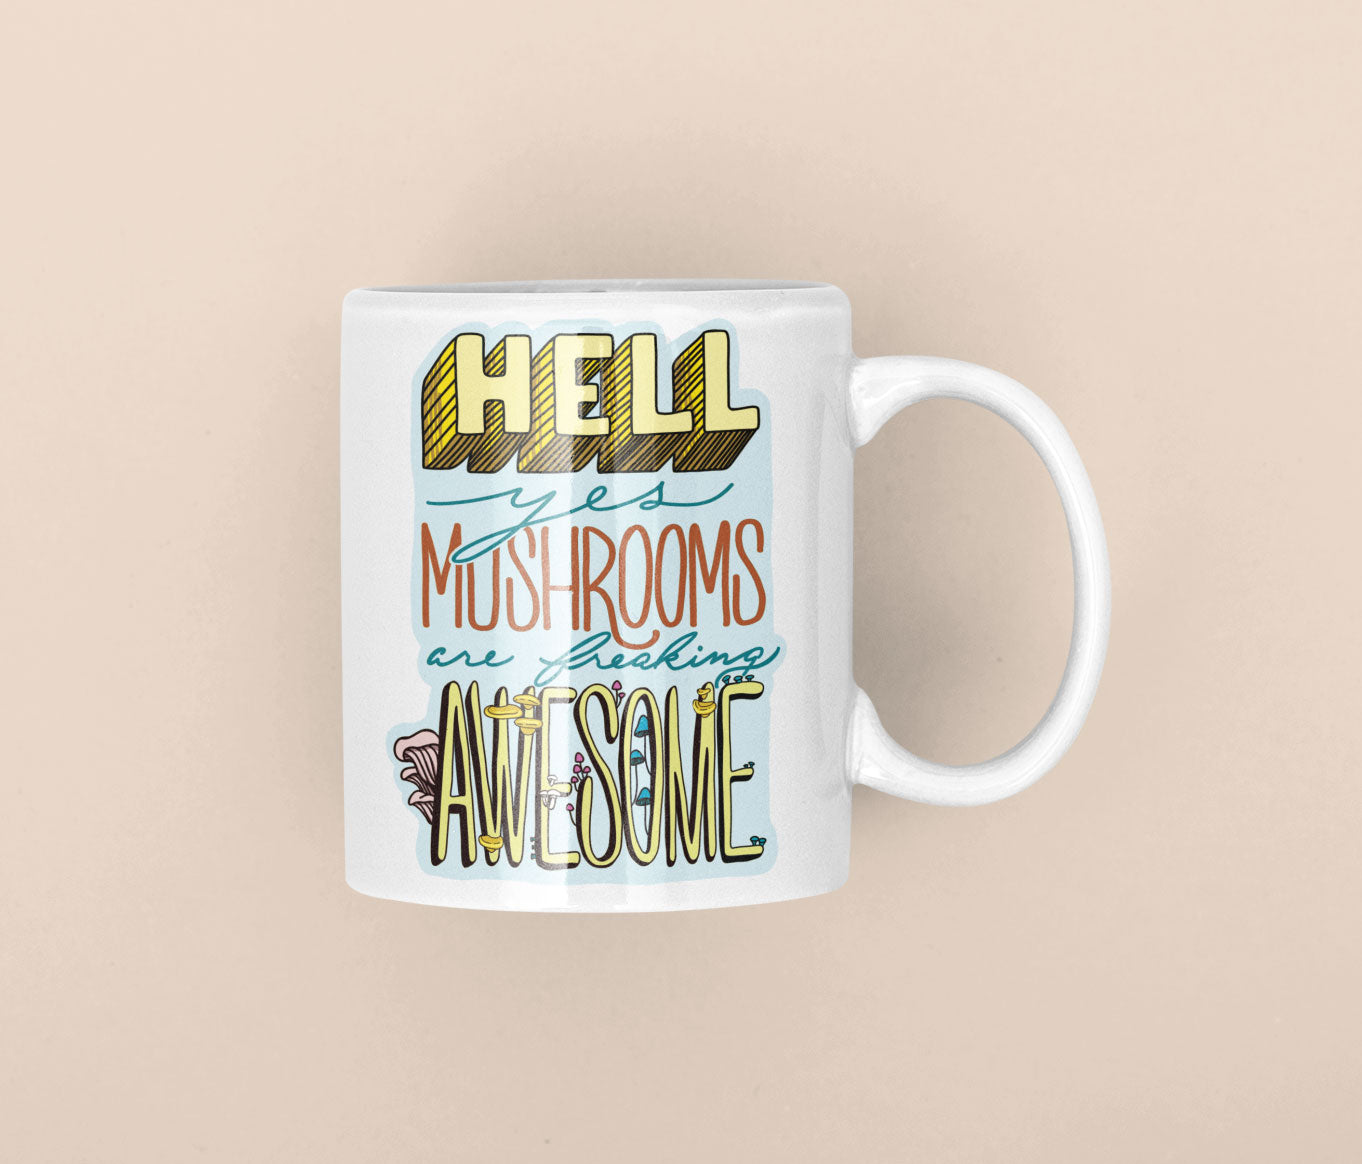 Hell Yes Mushrooms Are Freaking Awesome | Funny Mushroom Mug | 11oz/15oz Sizes